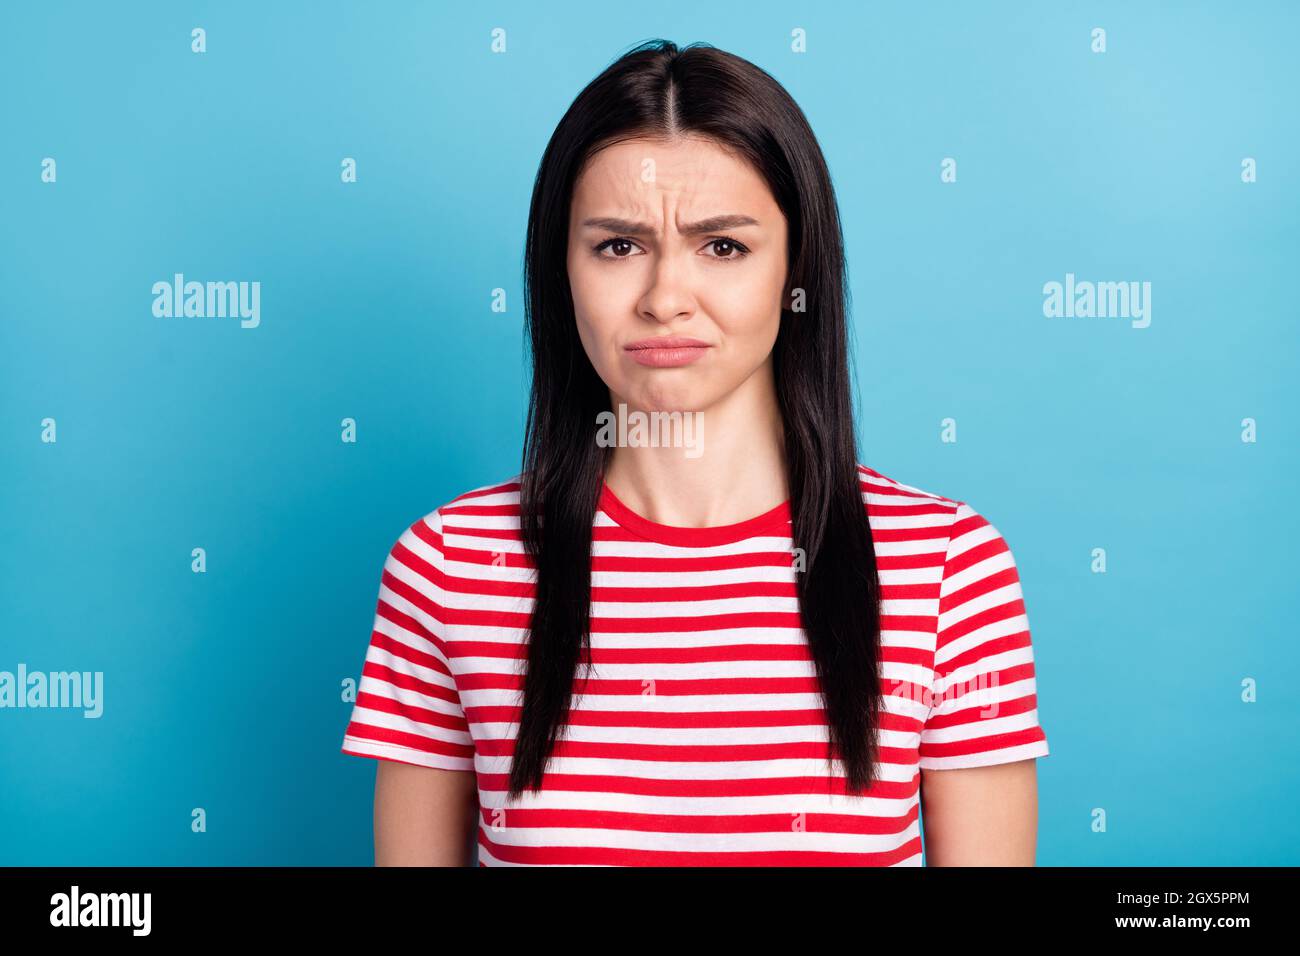 Foto di triste offesa ragazza guardare macchina fotografica indossare a righe rosso t-shirt isolato su sfondo blu colore Foto Stock